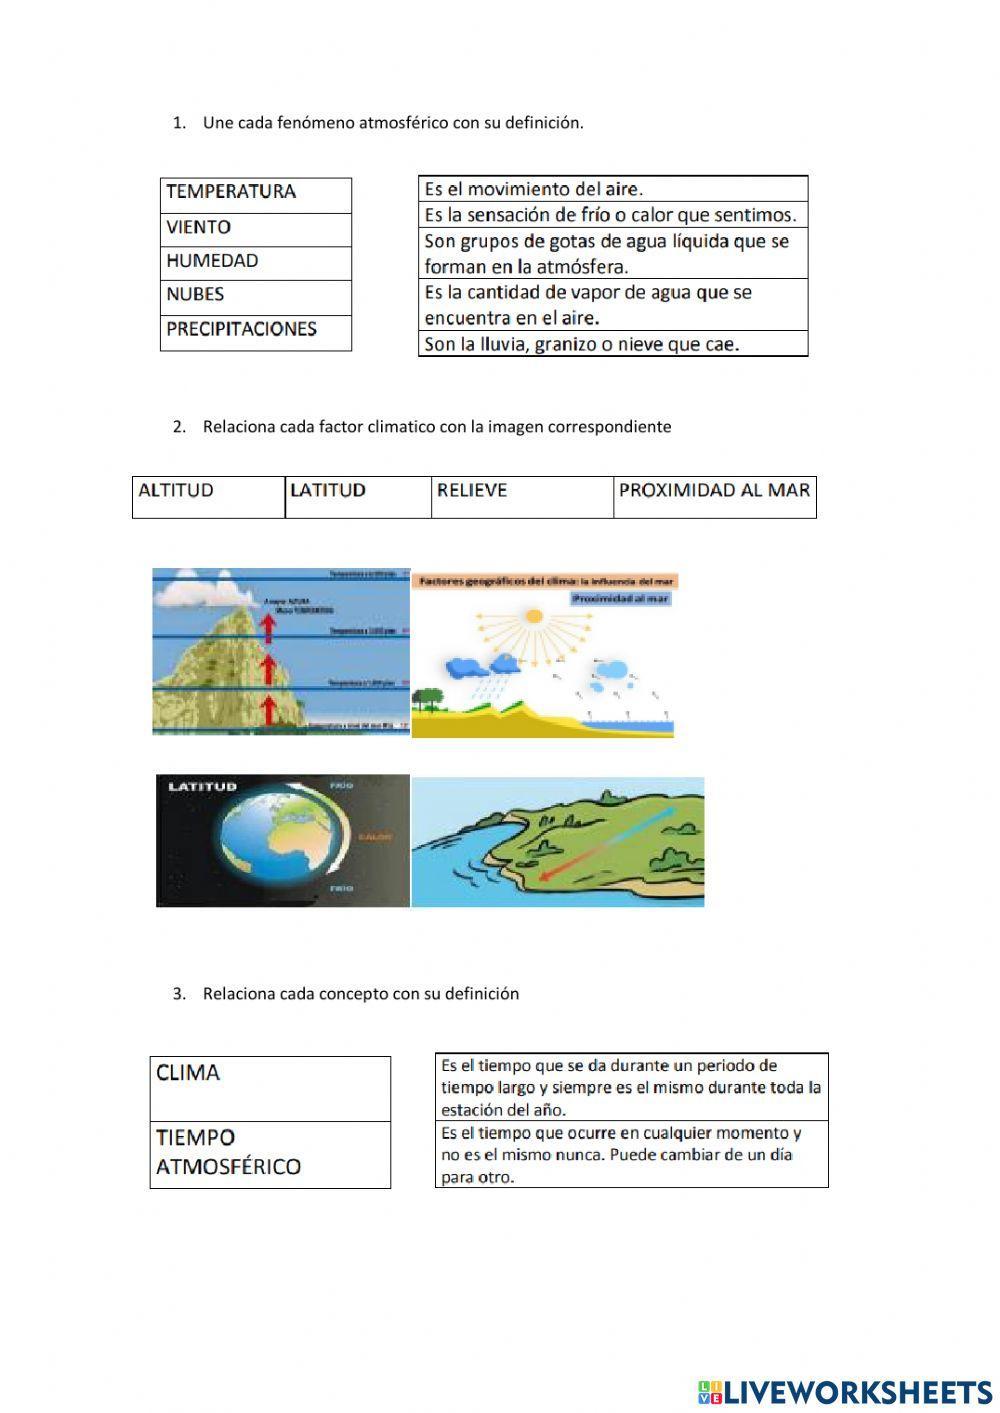 Factores climáticos y fenómenos atmosféricos